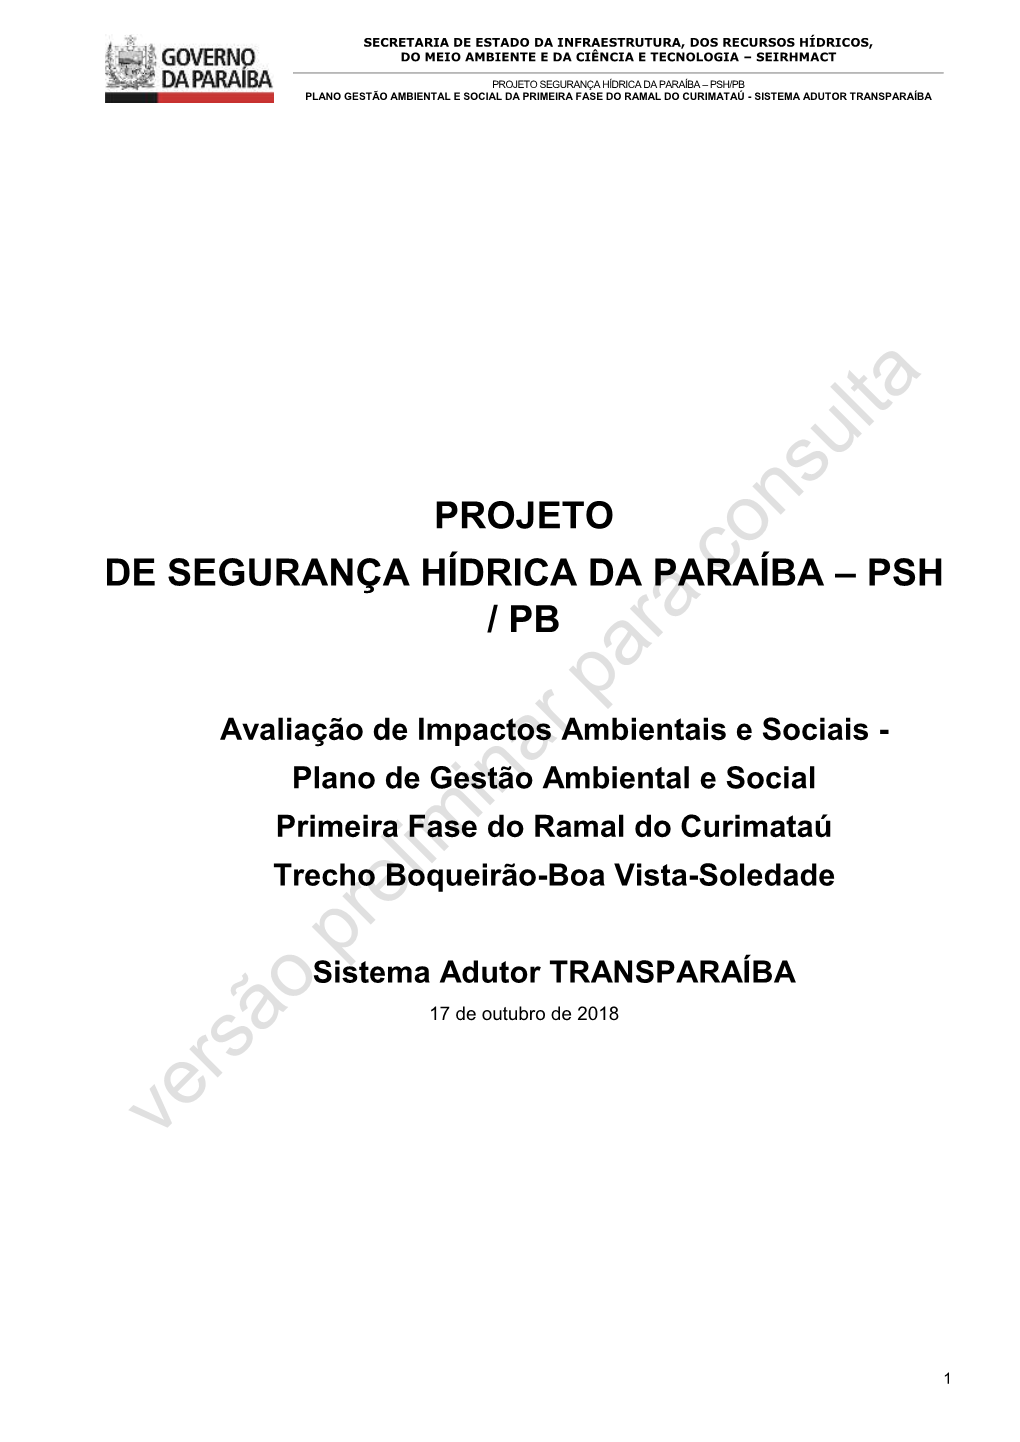 Projeto De Segurança Hídrica Da Paraíba – Psh / Pb